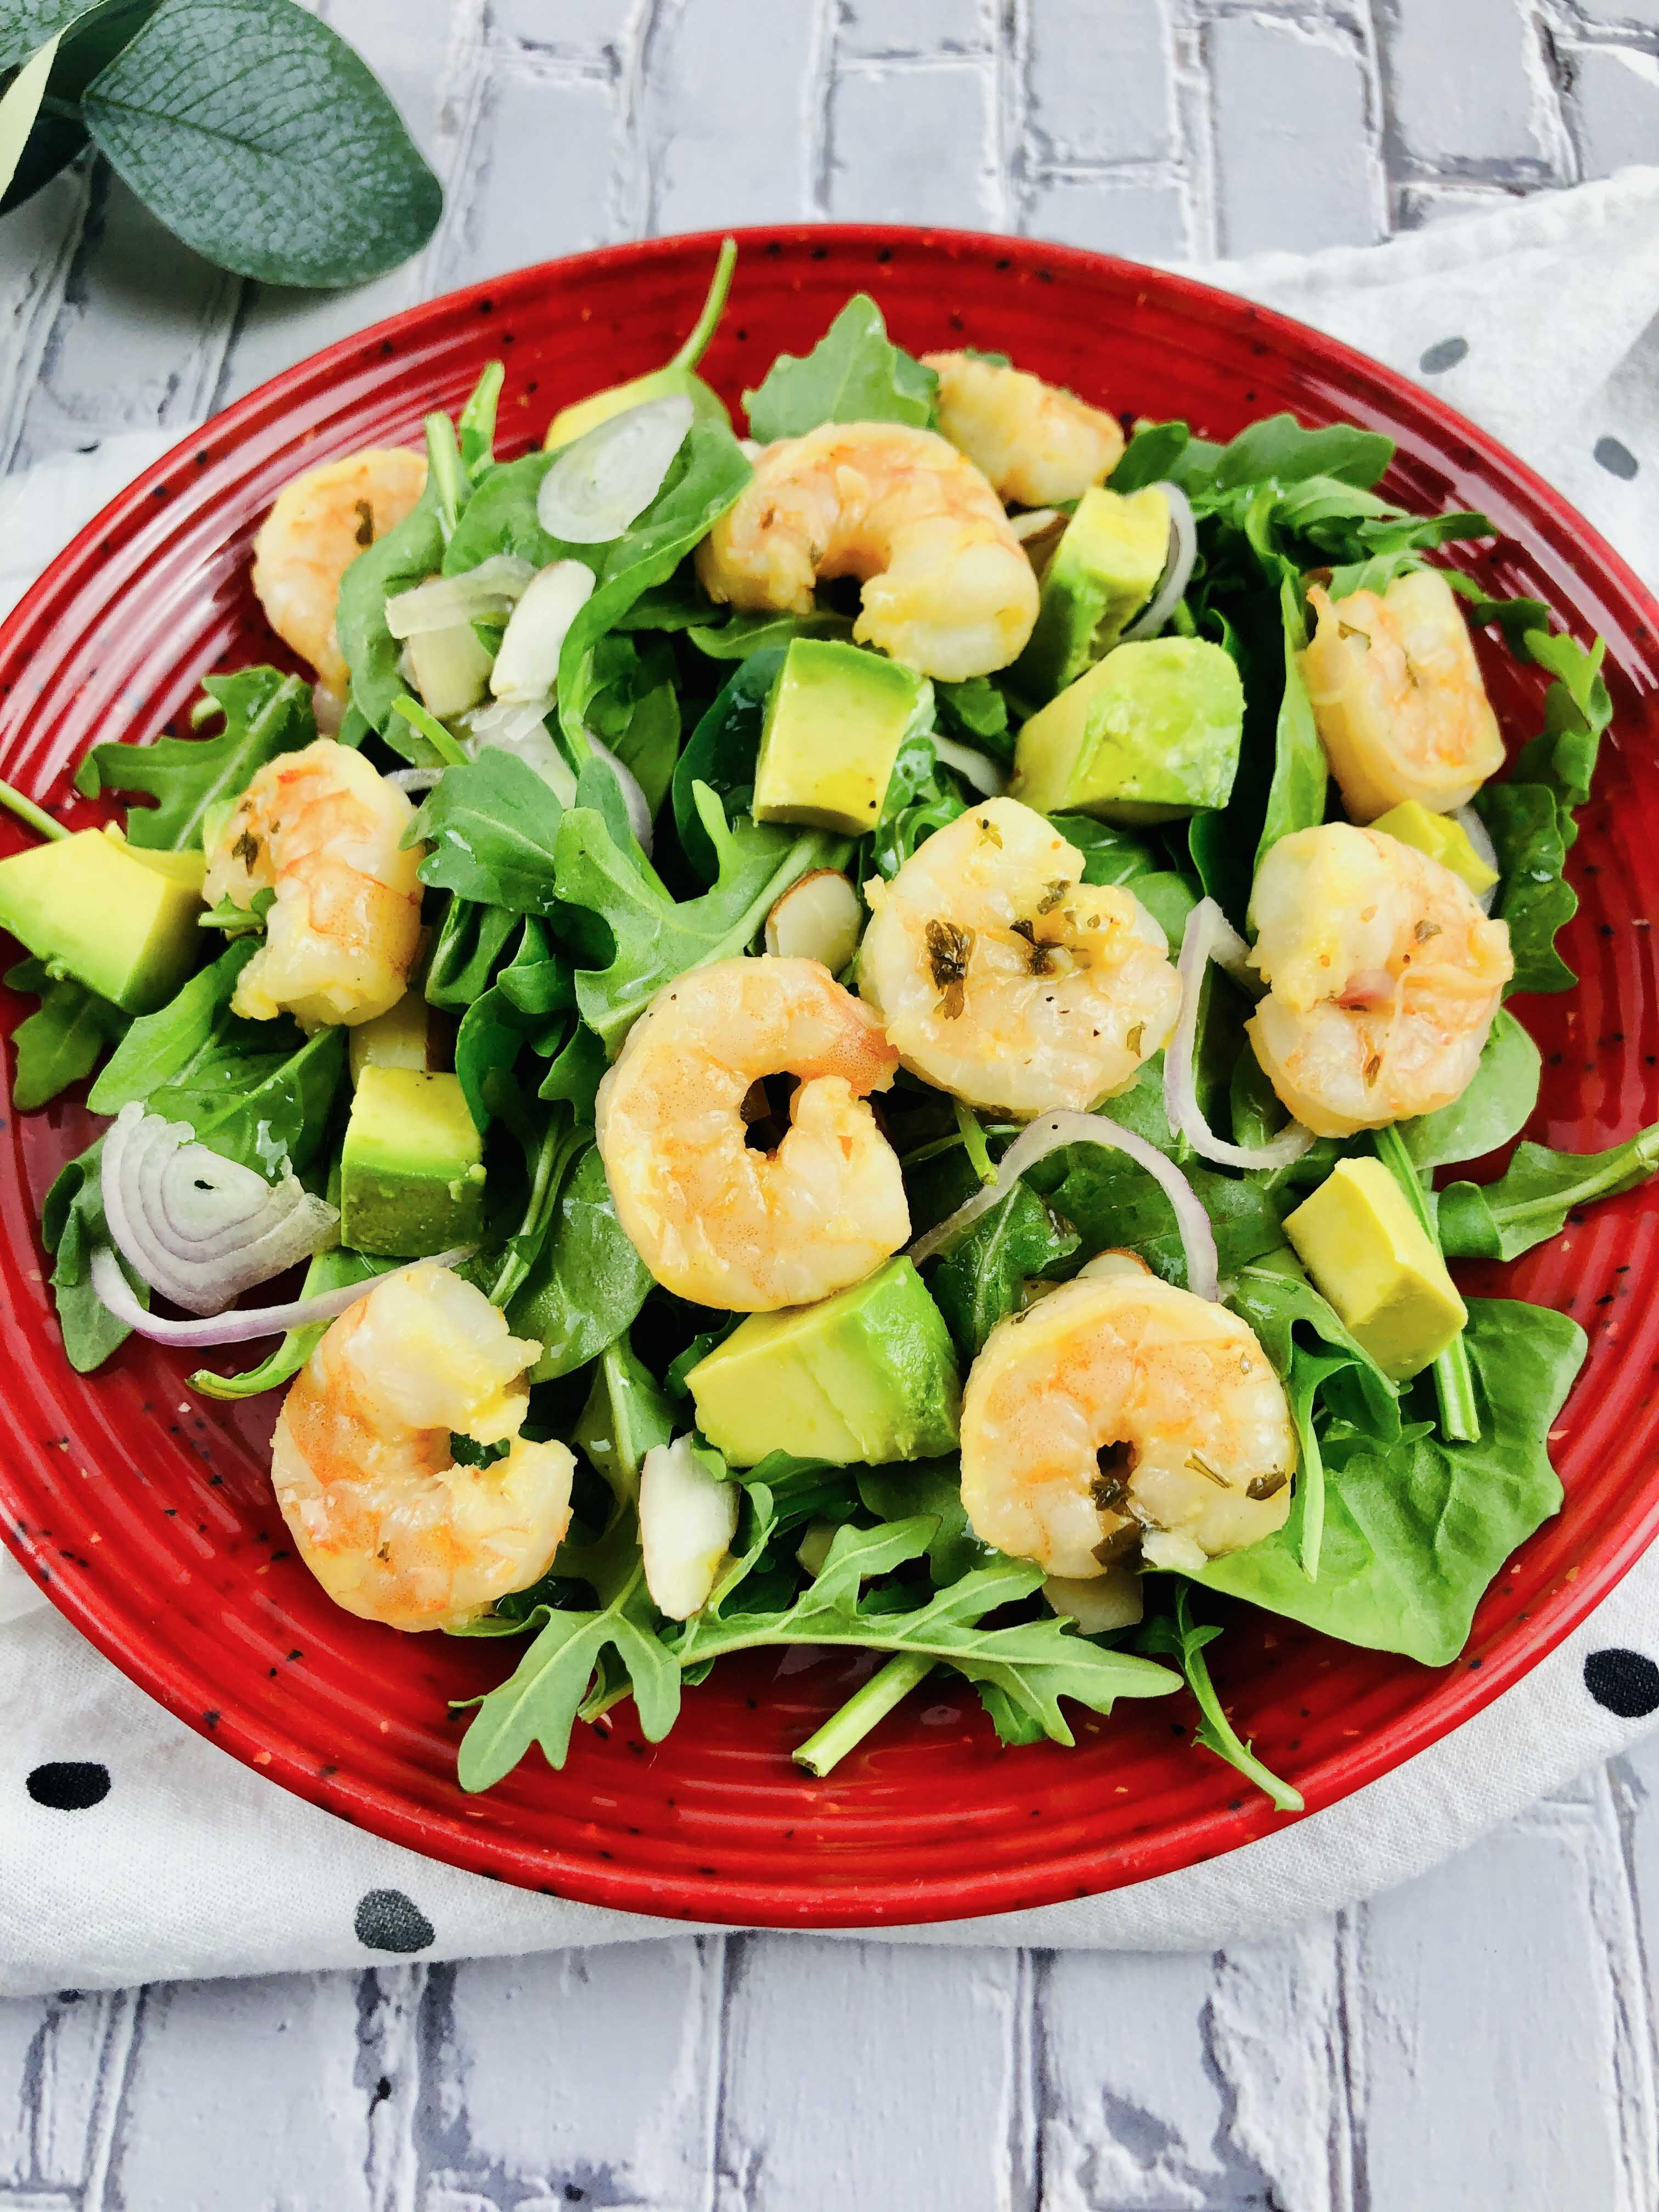 Shrimp Avocado Salad Recipe With Citrus Dressing | FaveSouthernRecipes.com